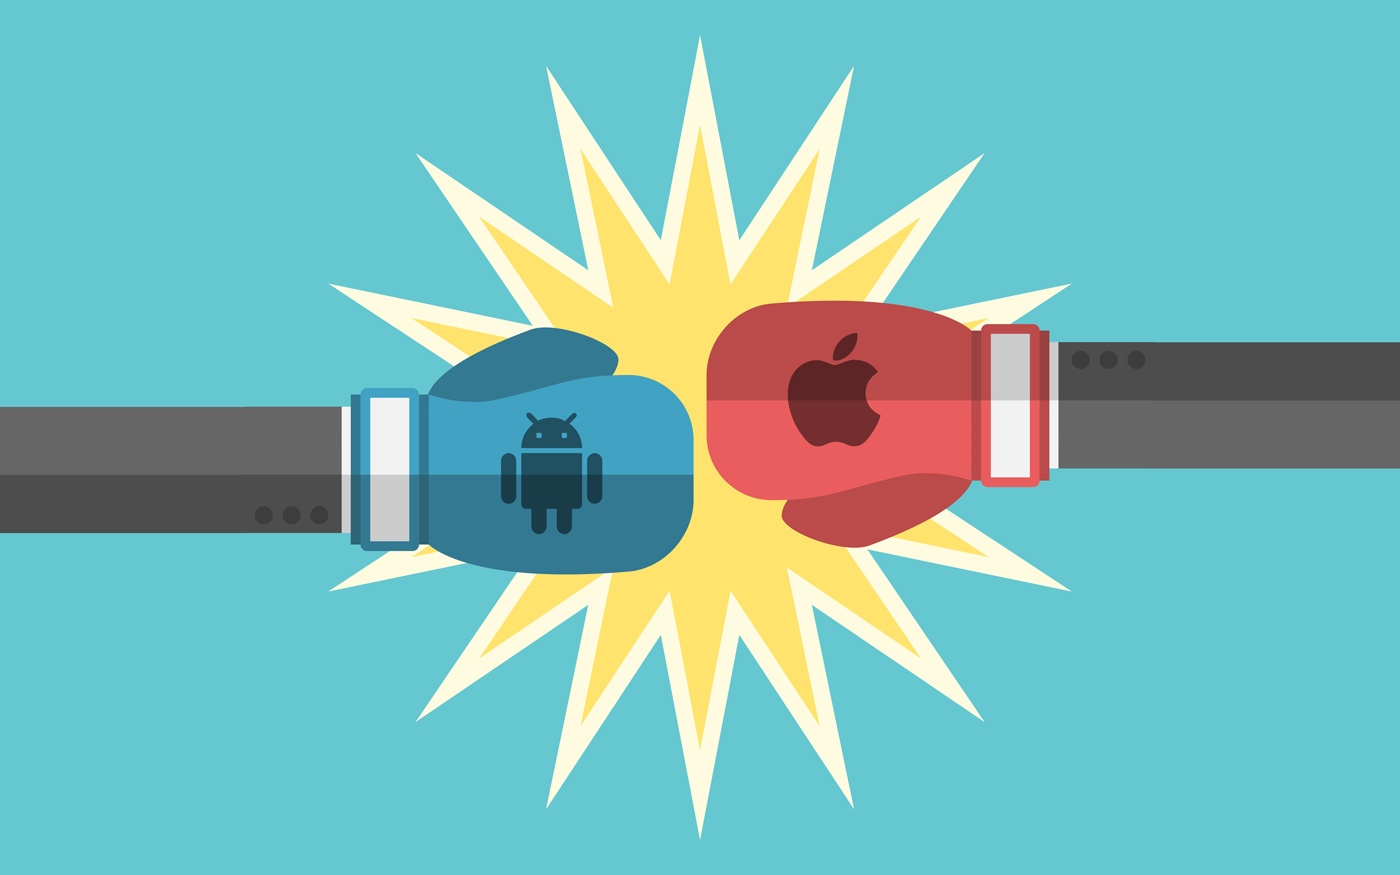 Grafik mit Apple und Android Logos